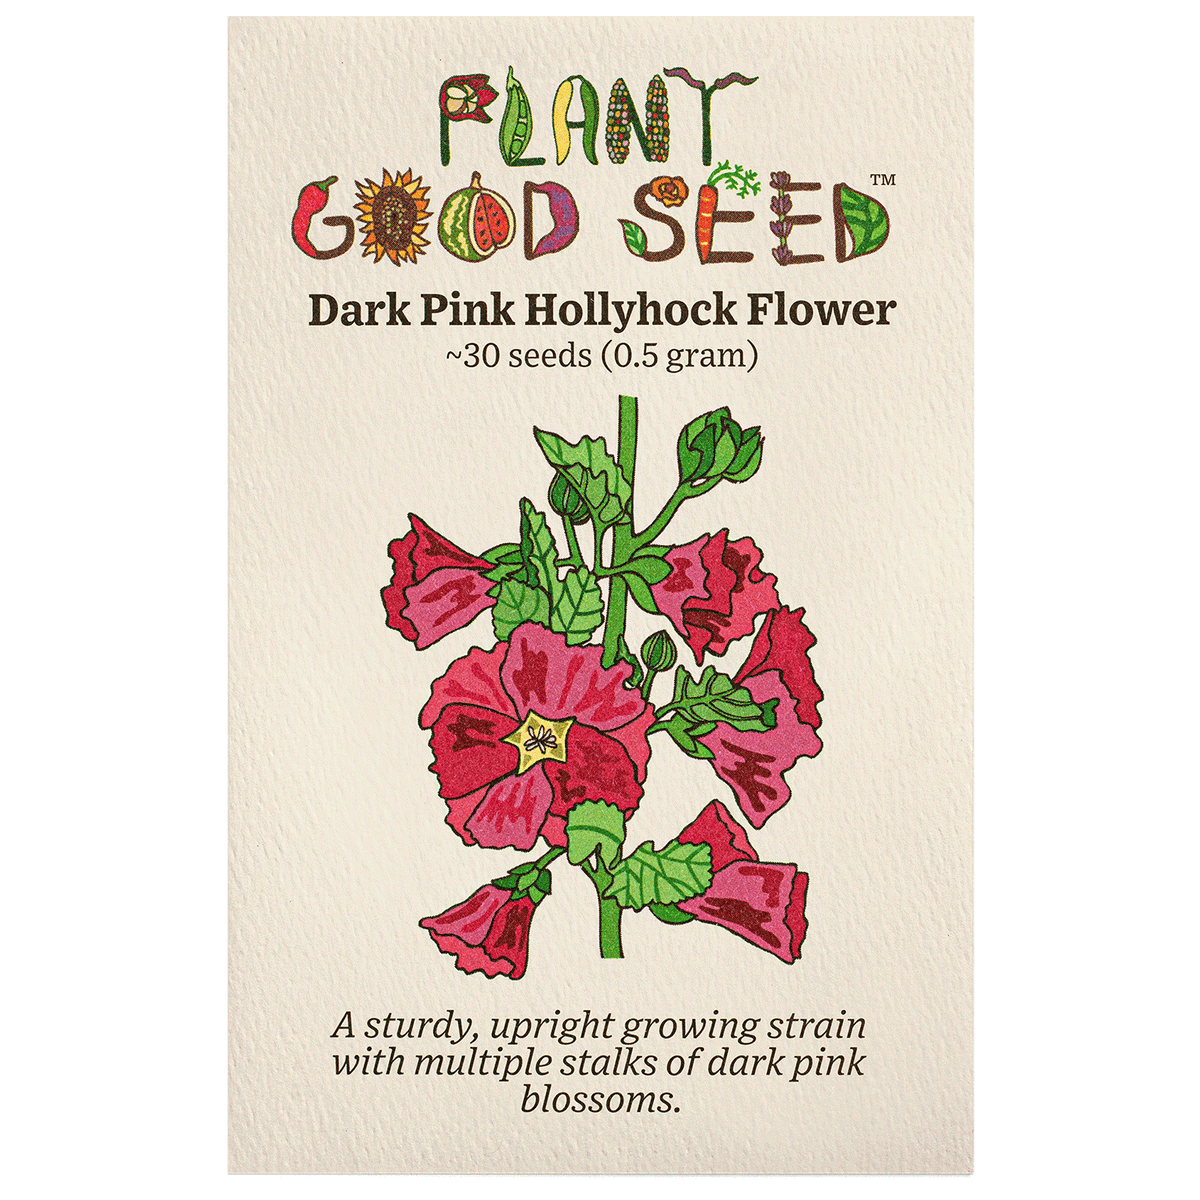 Dark Pink Hollyhock Flower Seed Packet Organic